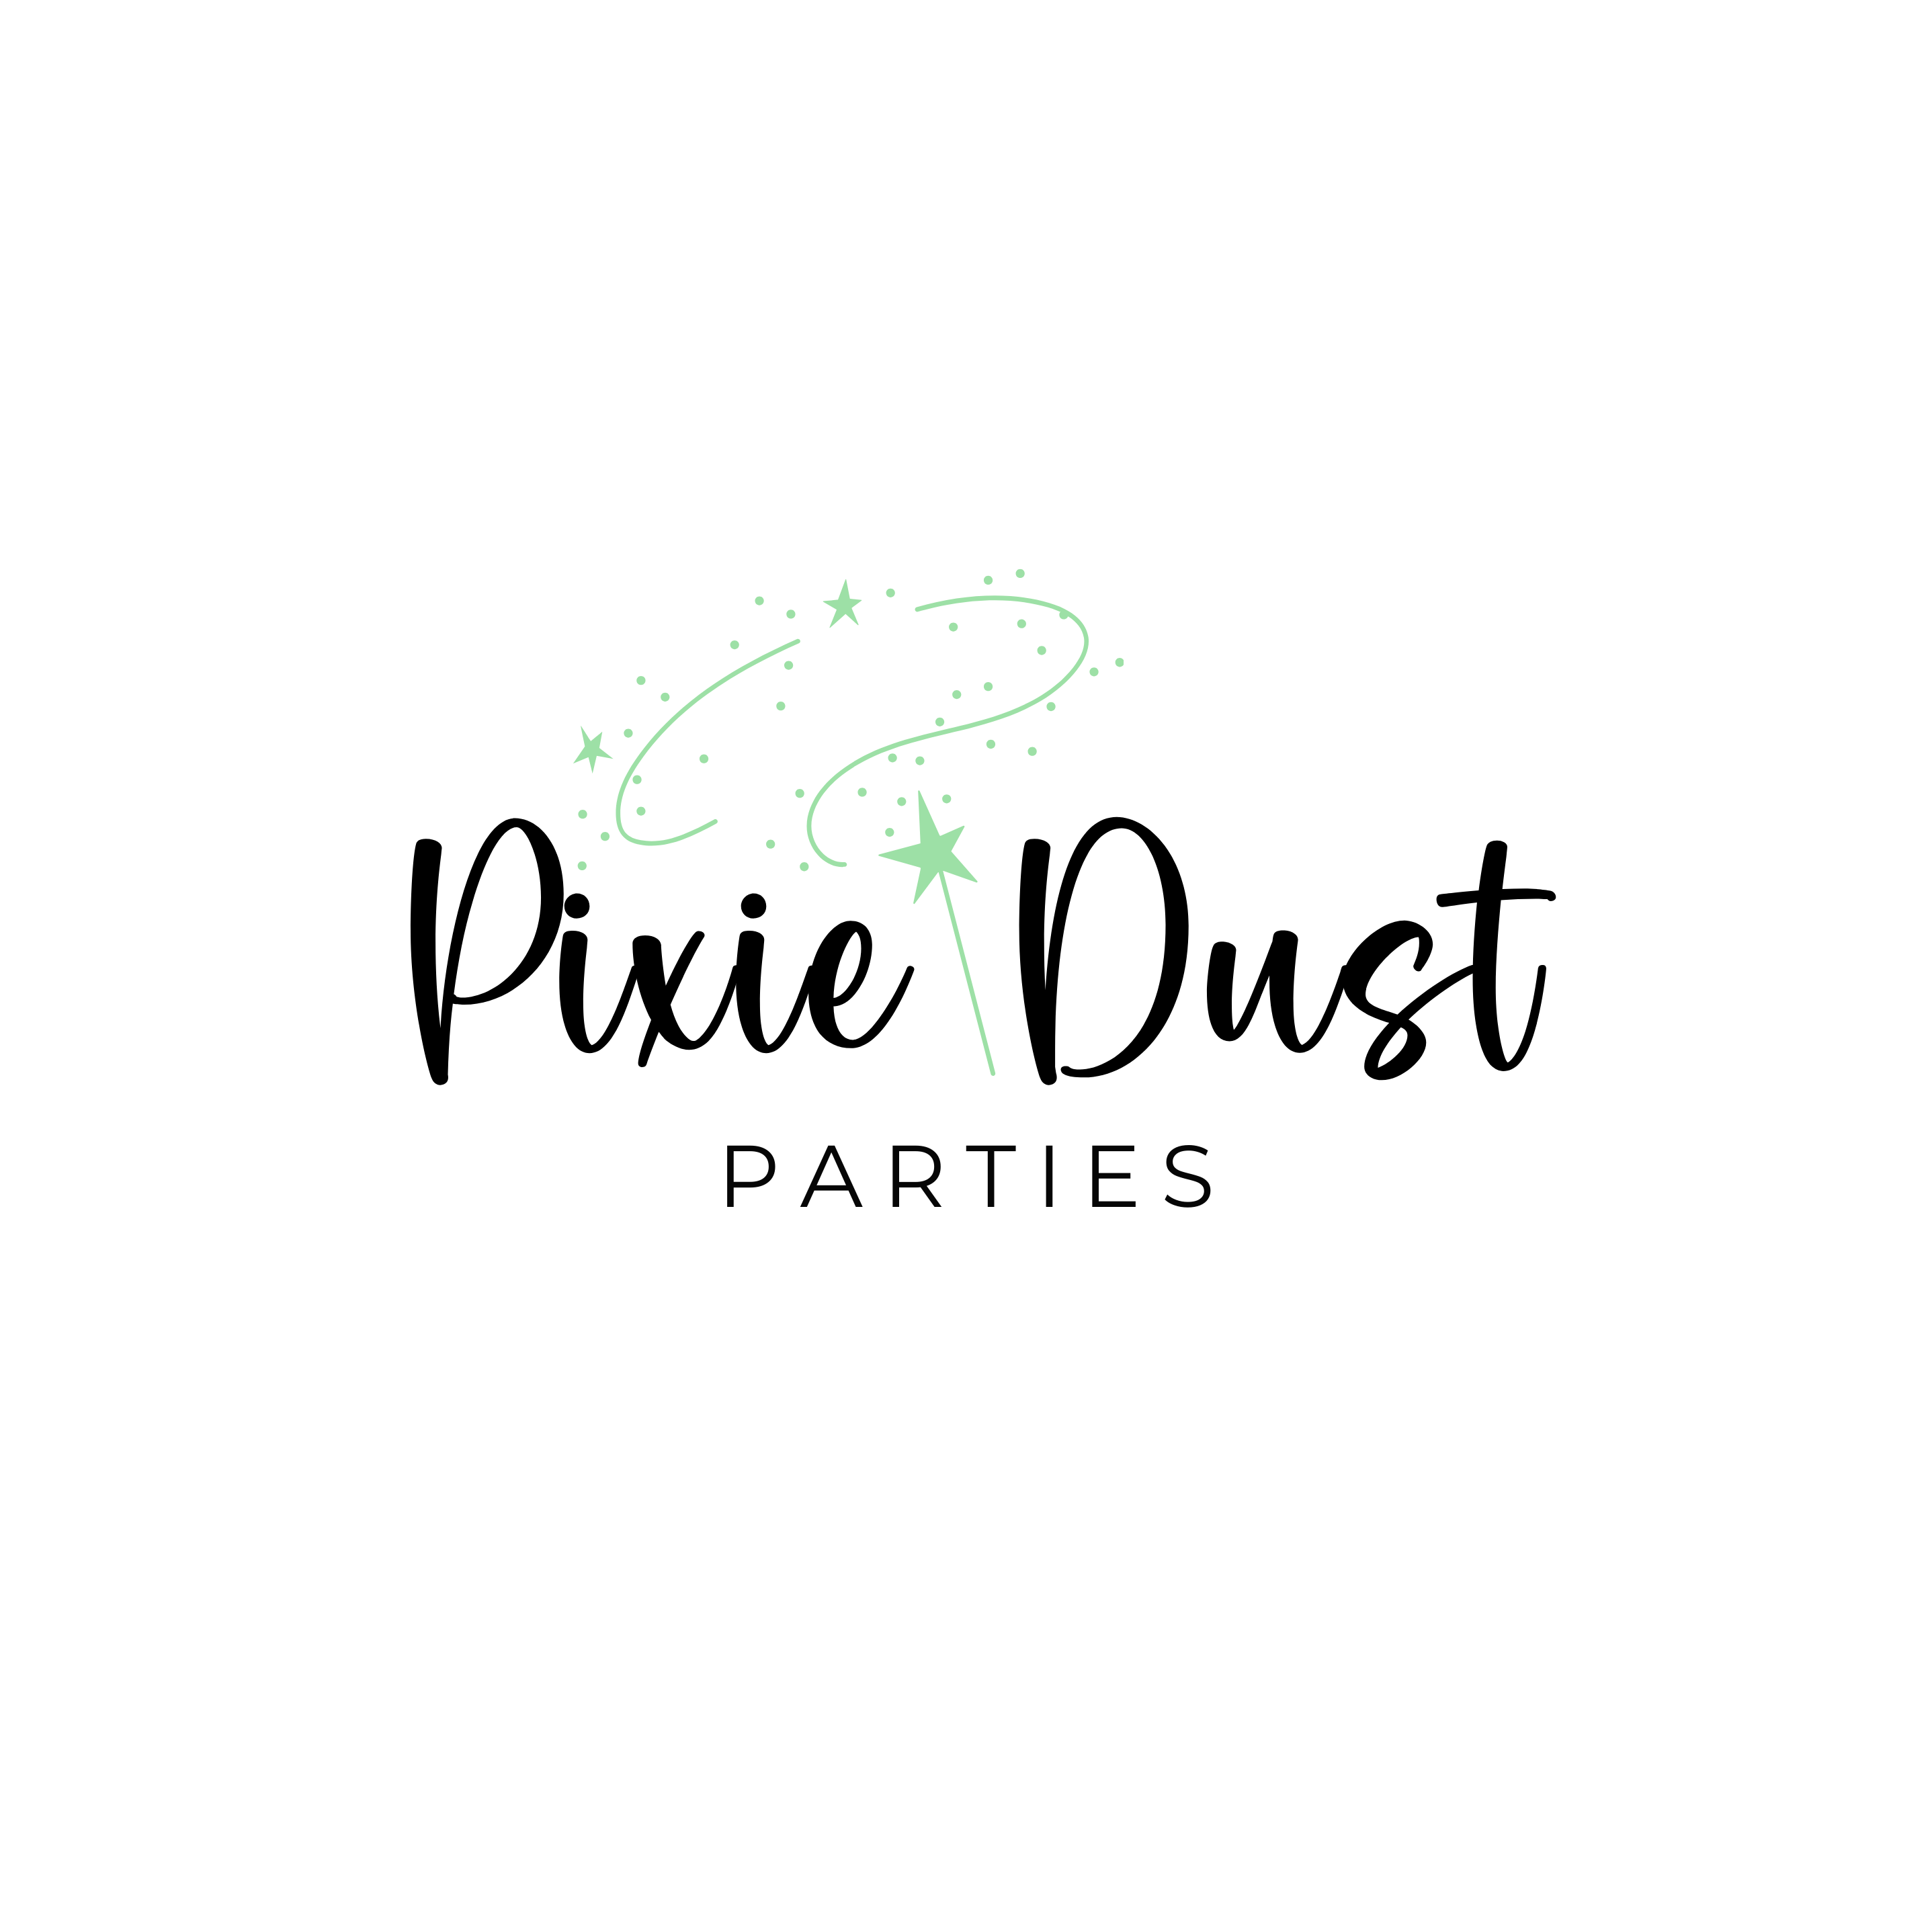 Pixie Dust Parties LLC